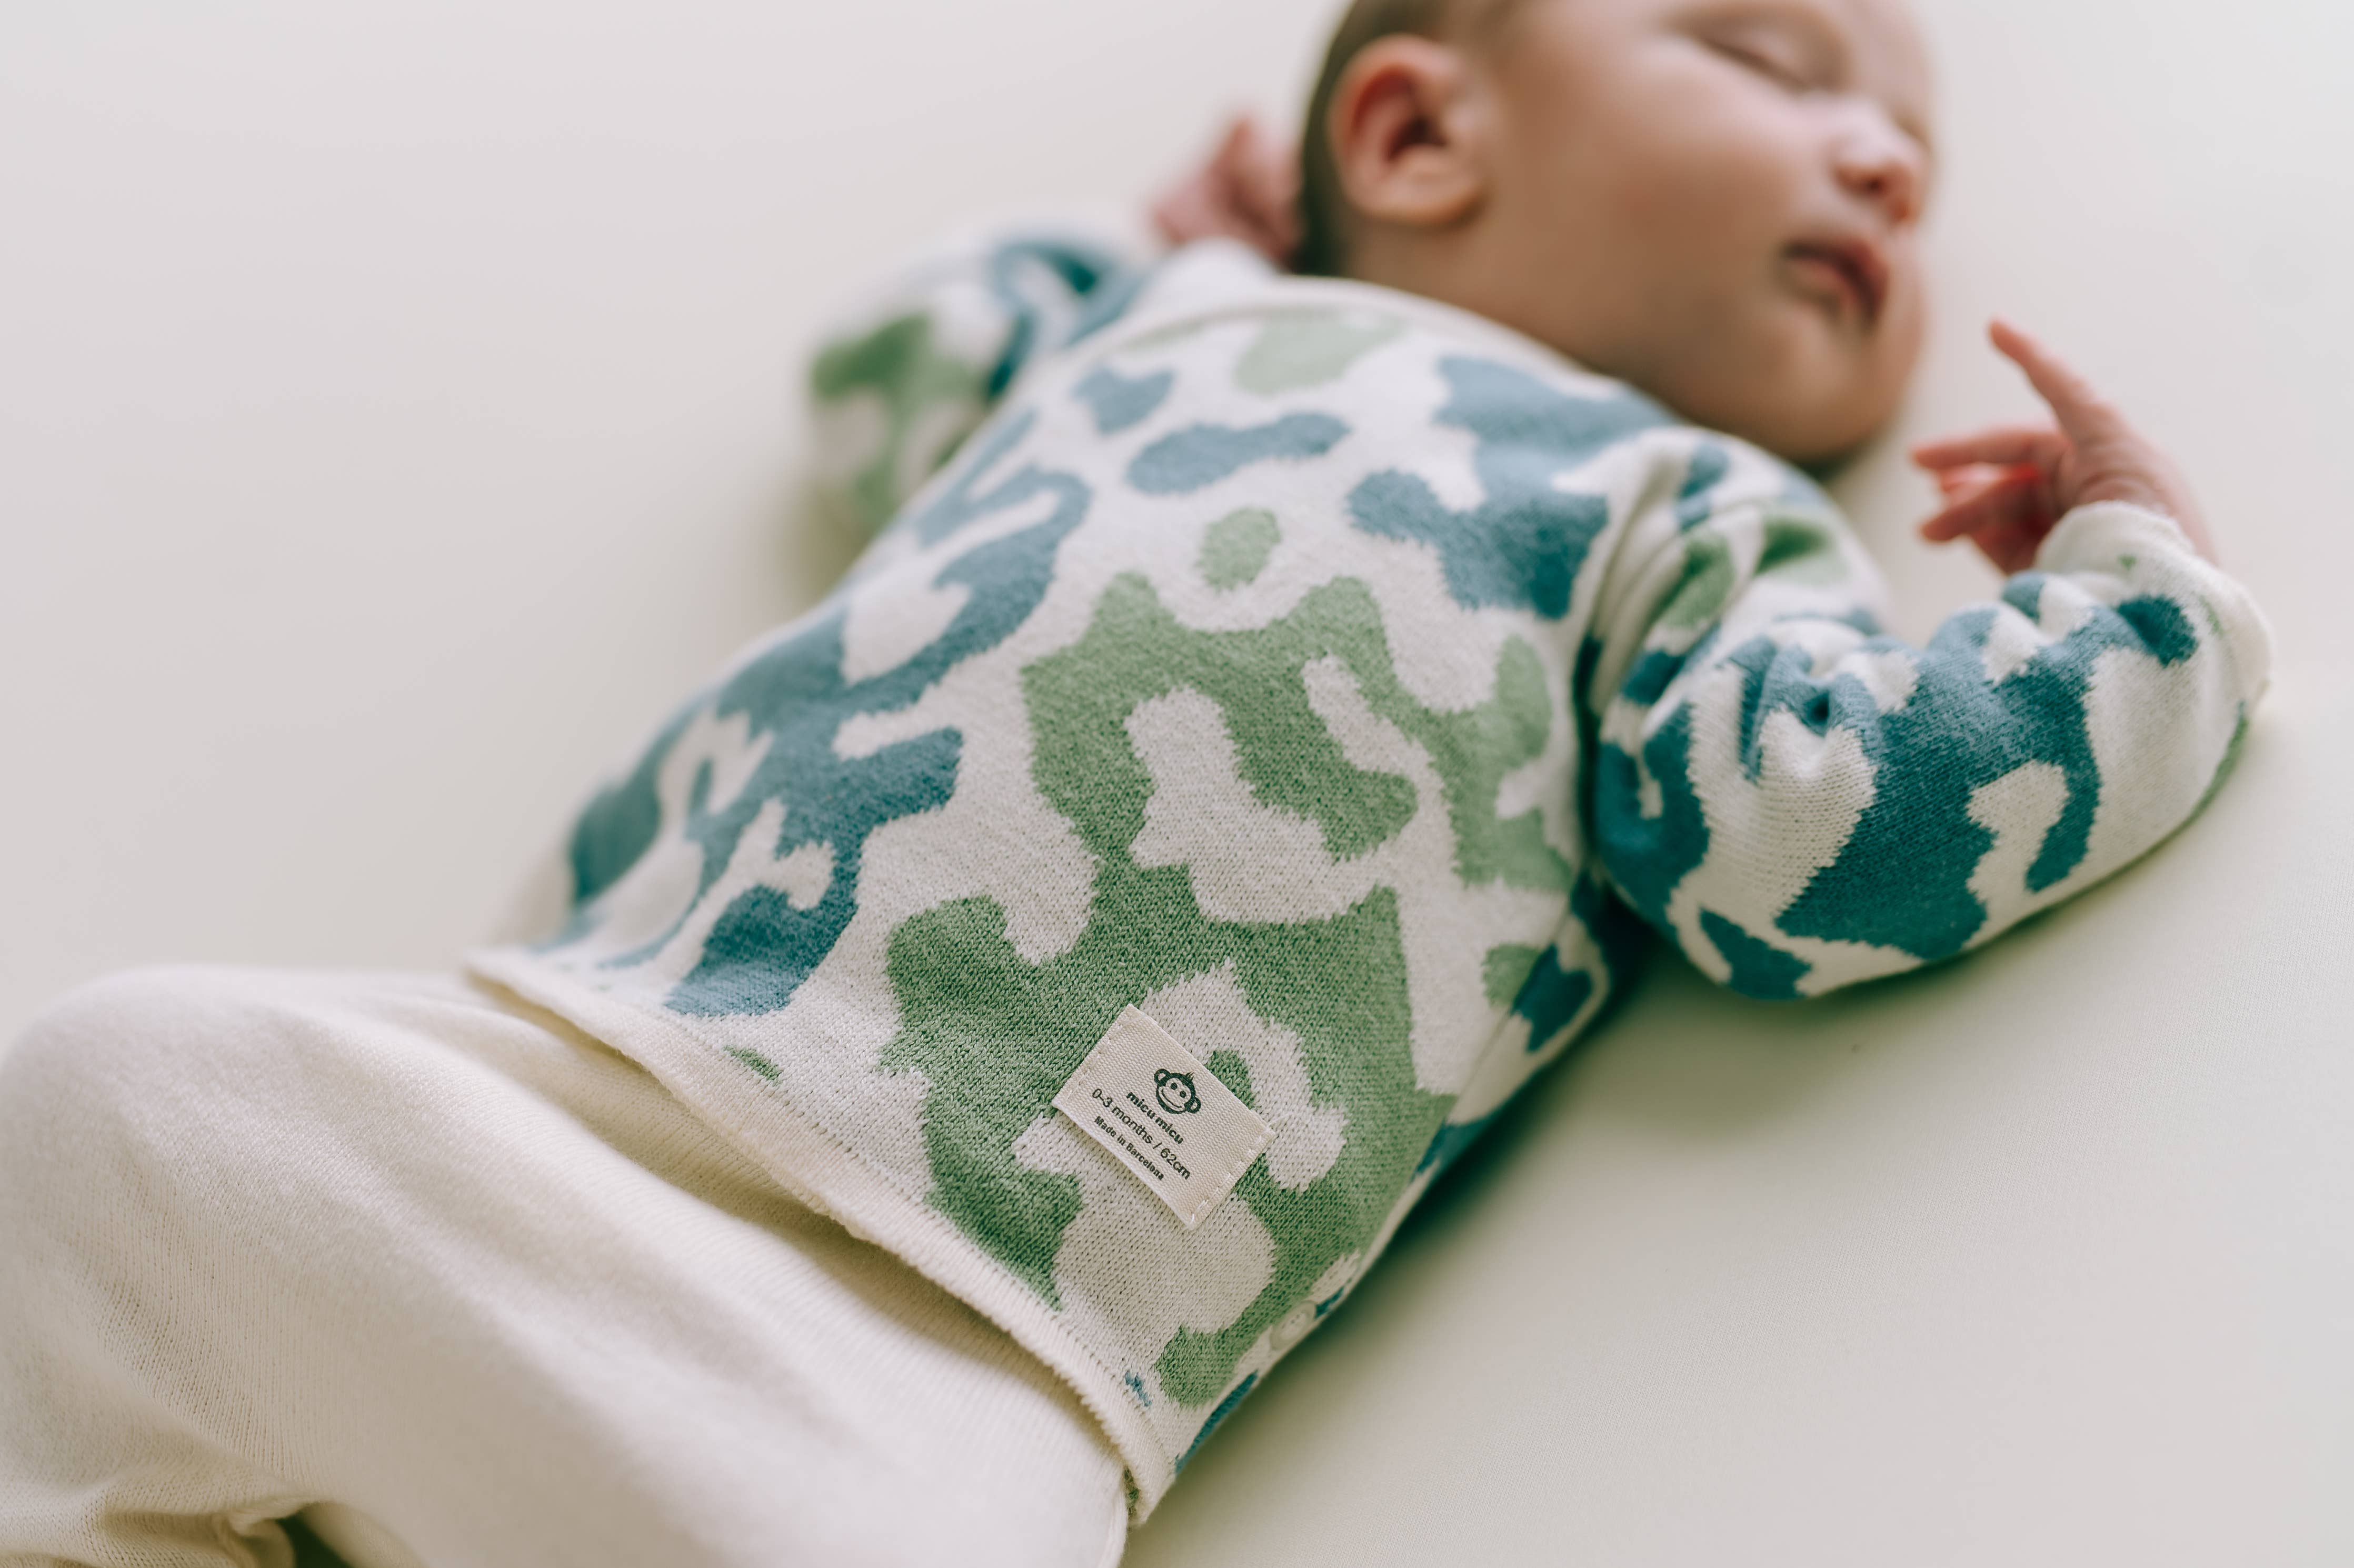 Neugeborenenpaket Camouflage Mint: 0 -3 Monat (56 cm)